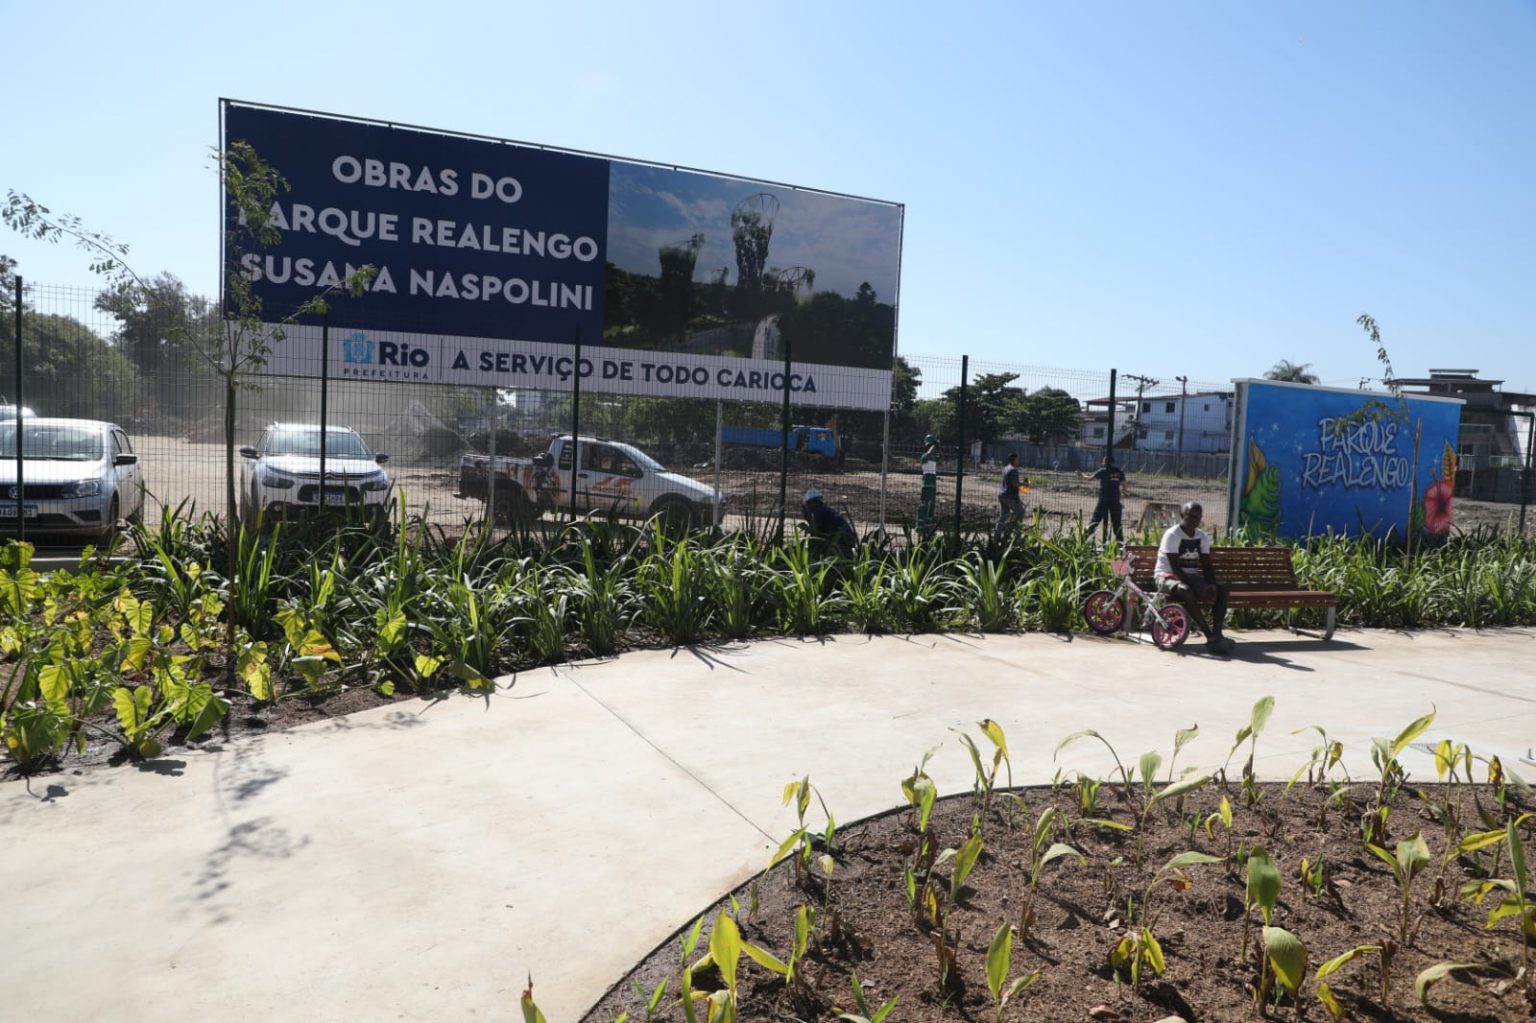 Parque Realengo Susana Naspolini promete ser a maior área de lazer da região